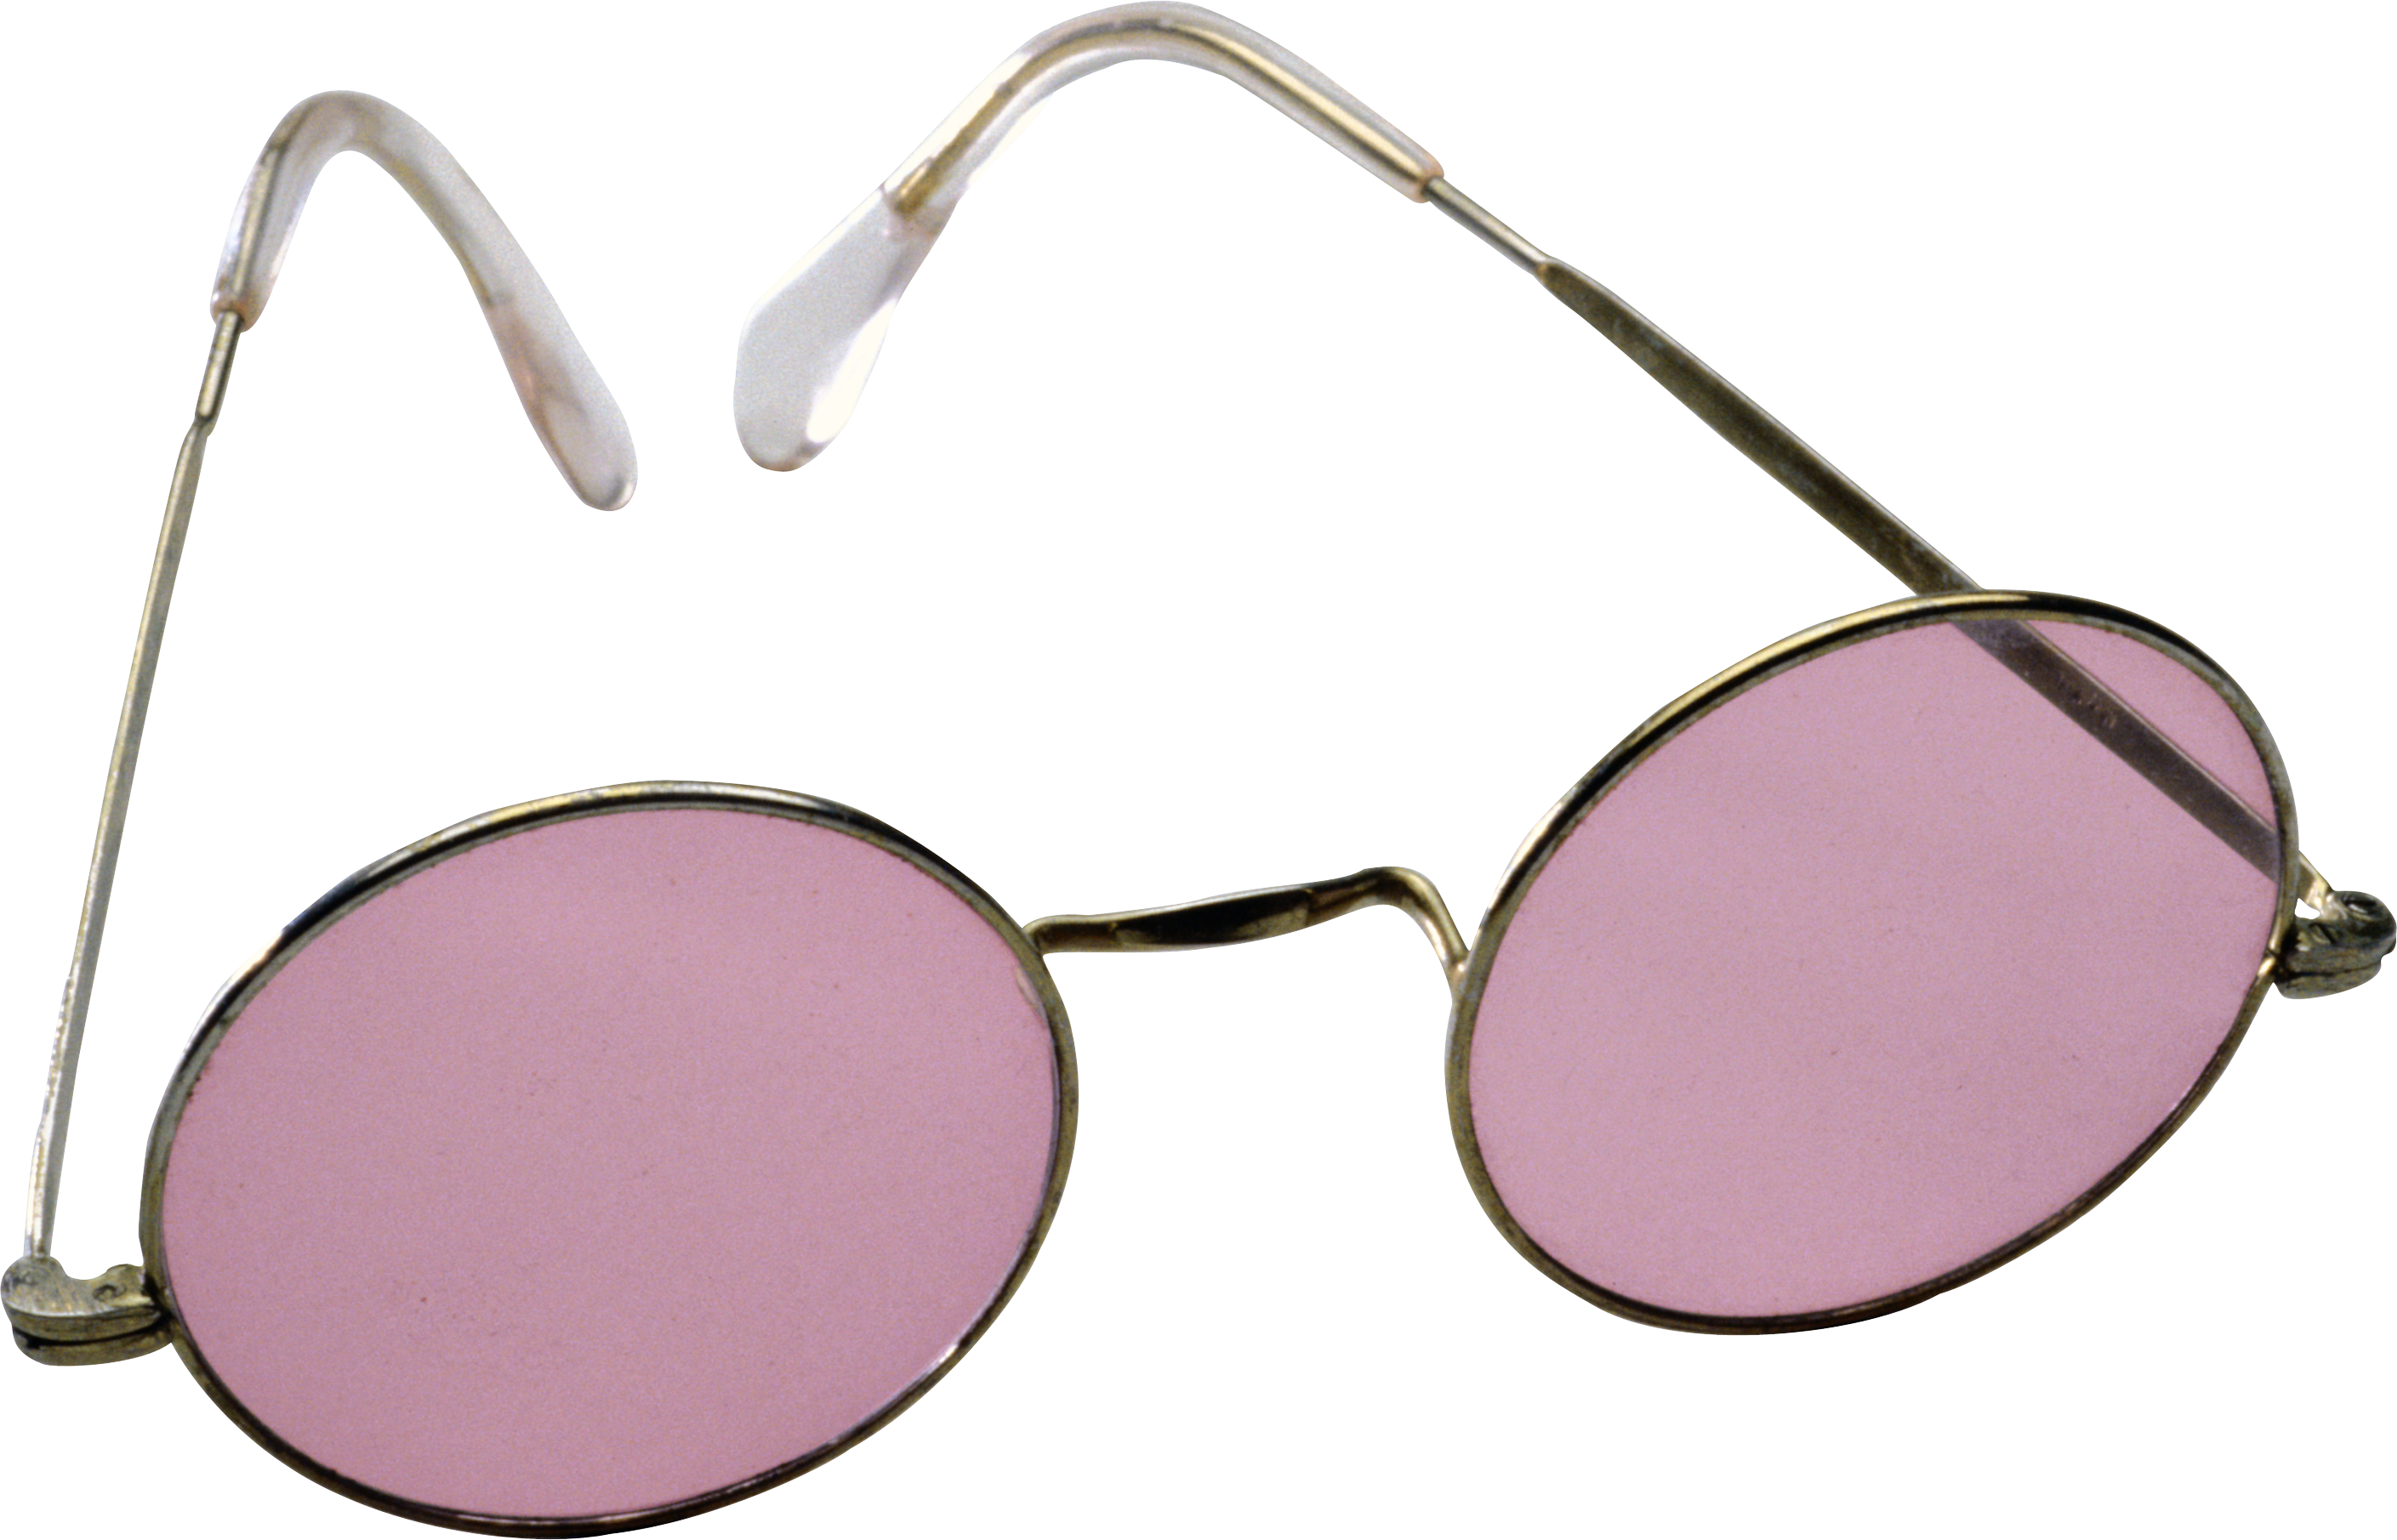 Sunglasses Png (2818x1811)